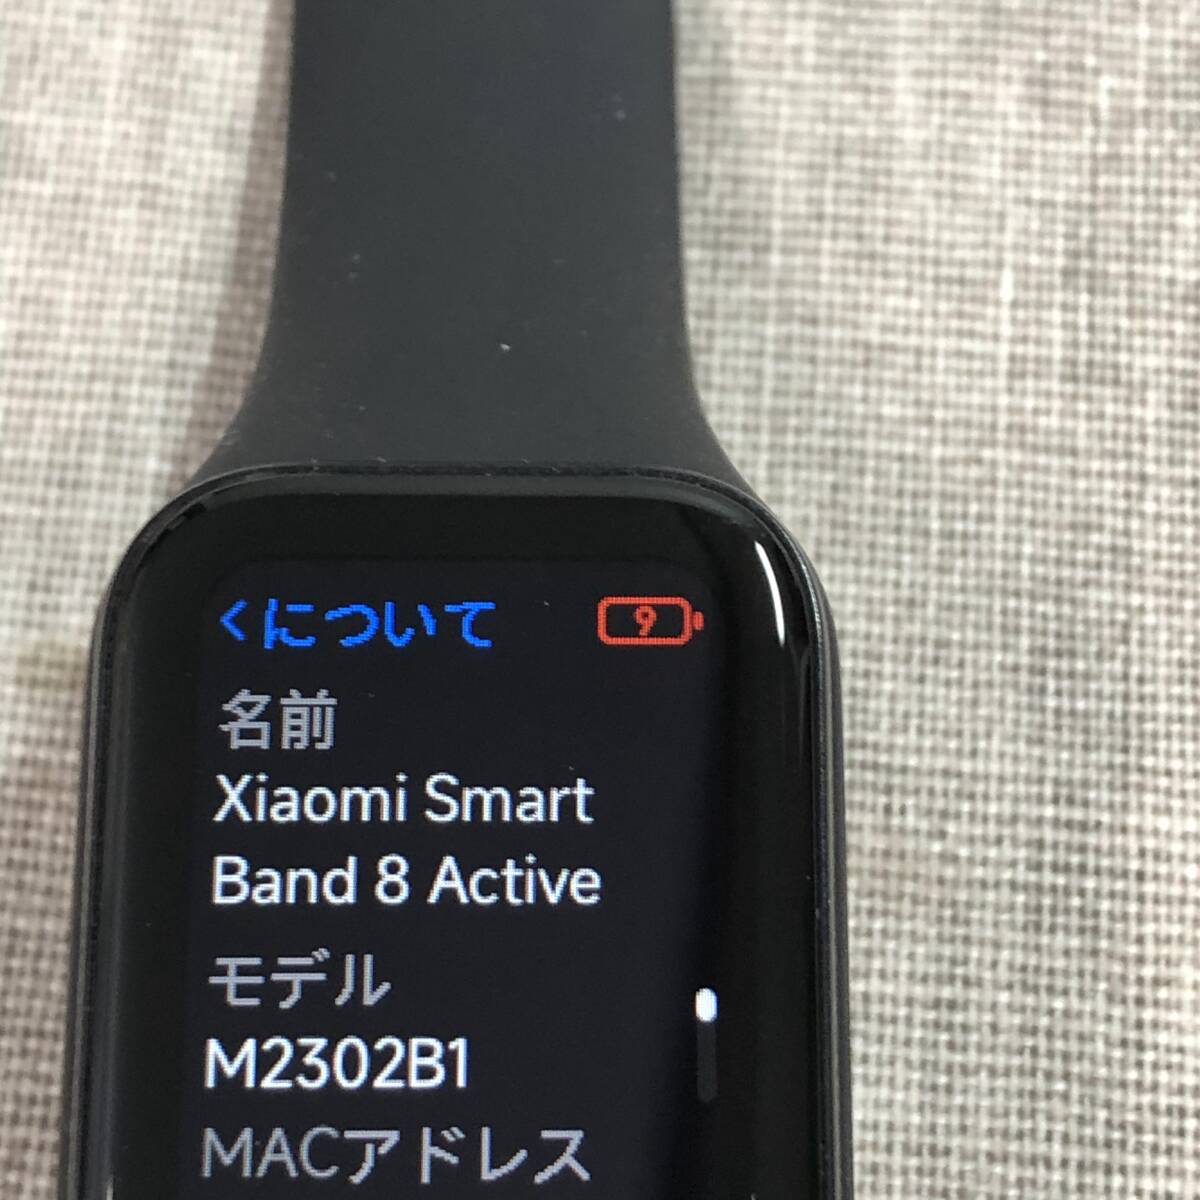  car omi(Xiaomi) smart watch Xiaomi Band 8 Active Smart band M2302B1